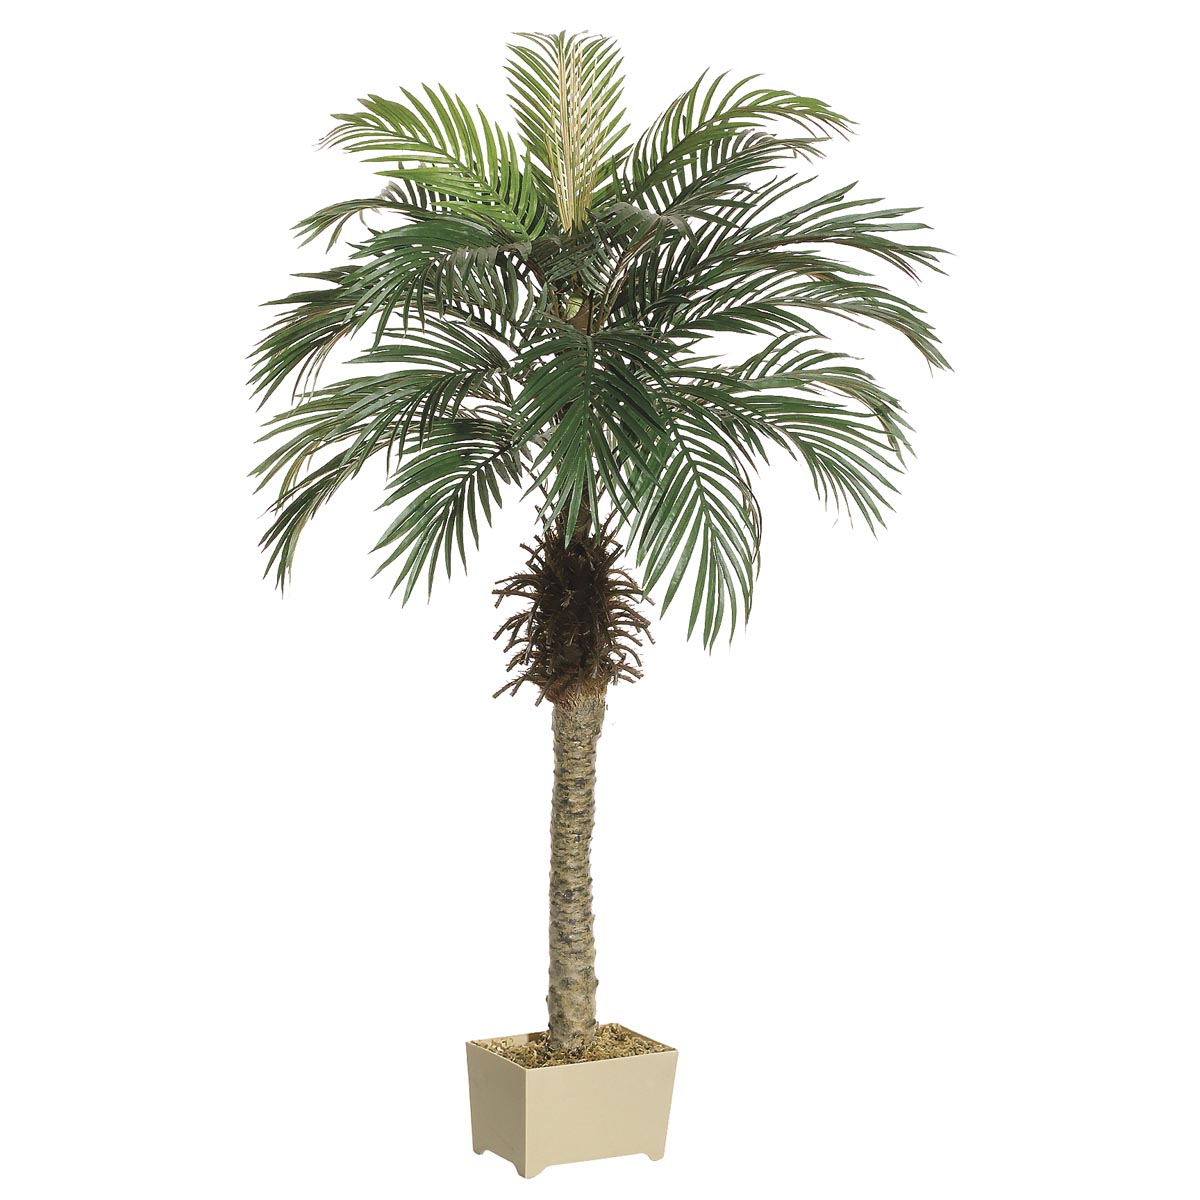 4.5 Foot Phoenix Palm Tree In Decorative Pot